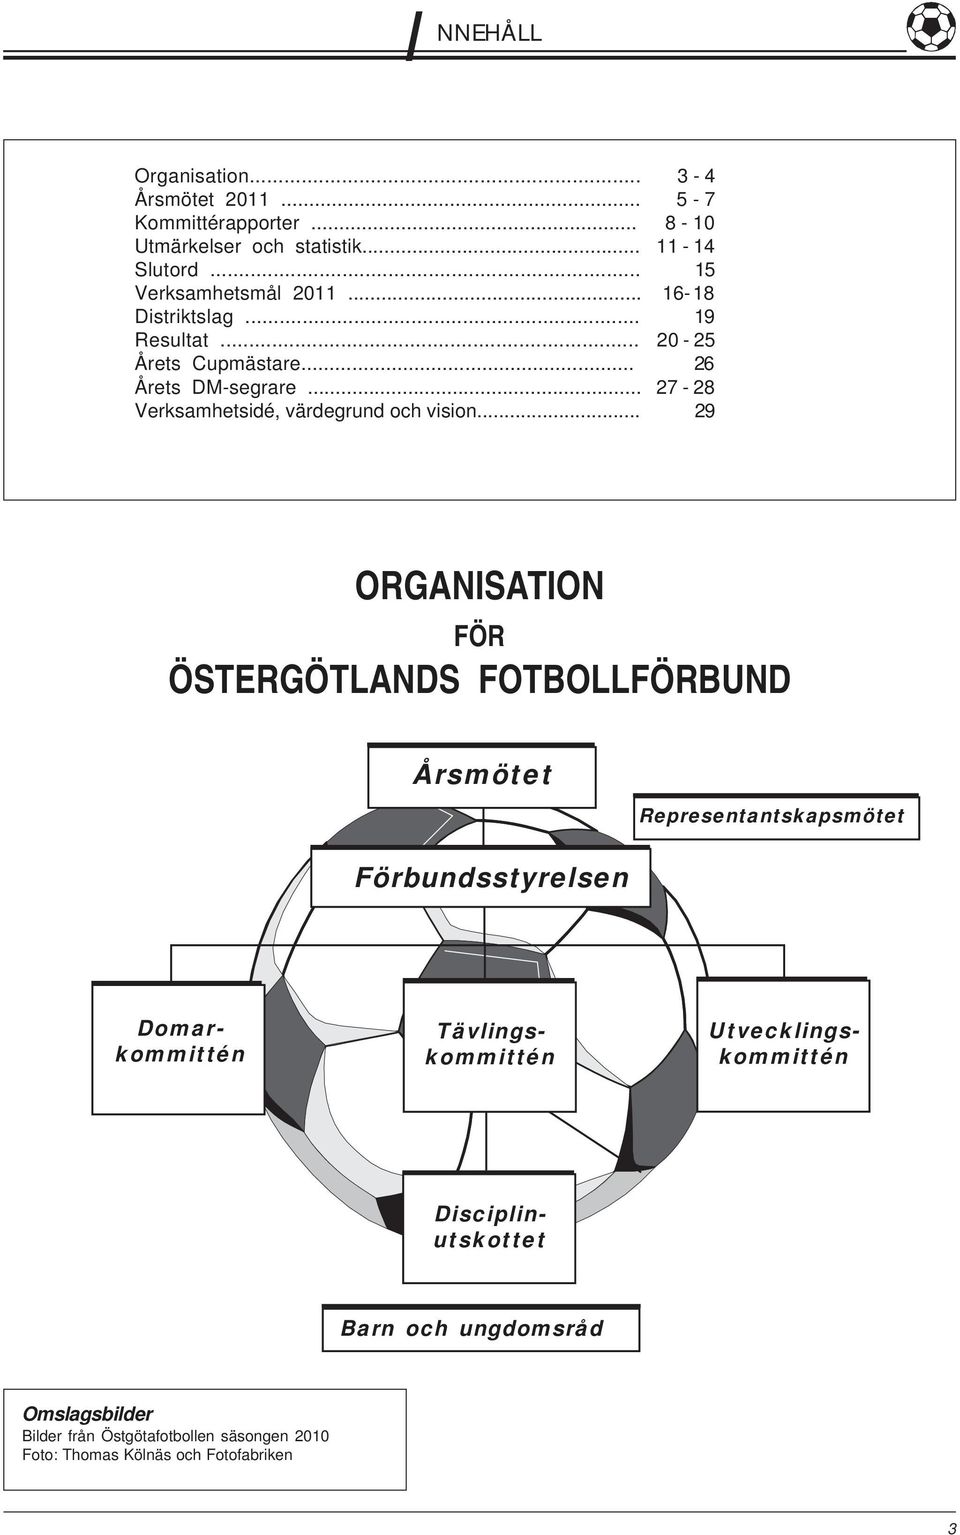 ORGANISATION FÖR ÖSTERGÖTLANDS FOTBOLLFÖRBUND - PDF Free Download